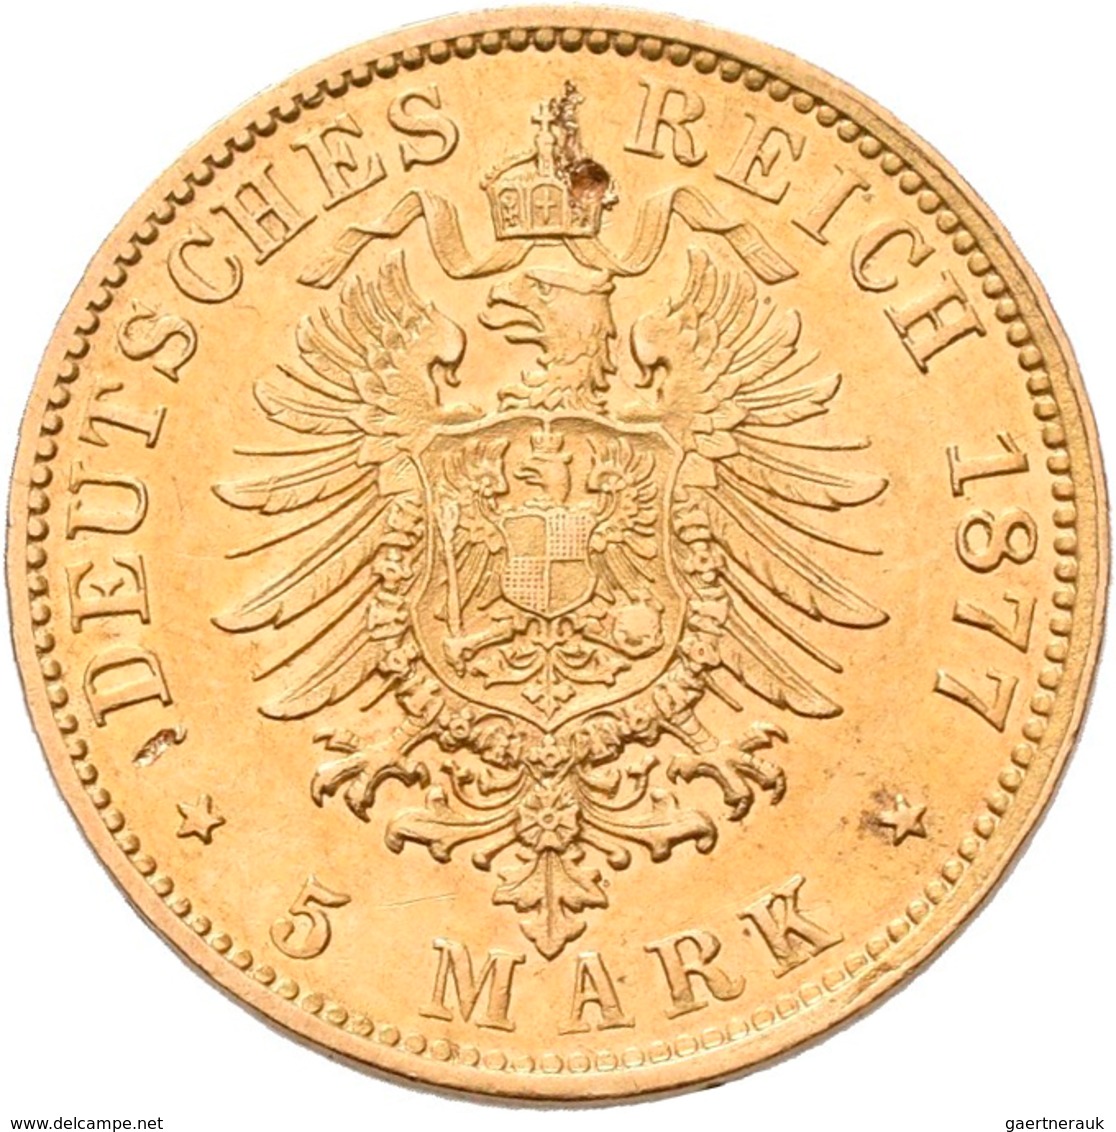 Hamburg: Freie Und Hansestadt: 5 Mark 1877 J, Jaeger 208. 1,97 G, 900/1000 Gold. Einhieb/Prüfspur? I - Pièces De Monnaie D'or